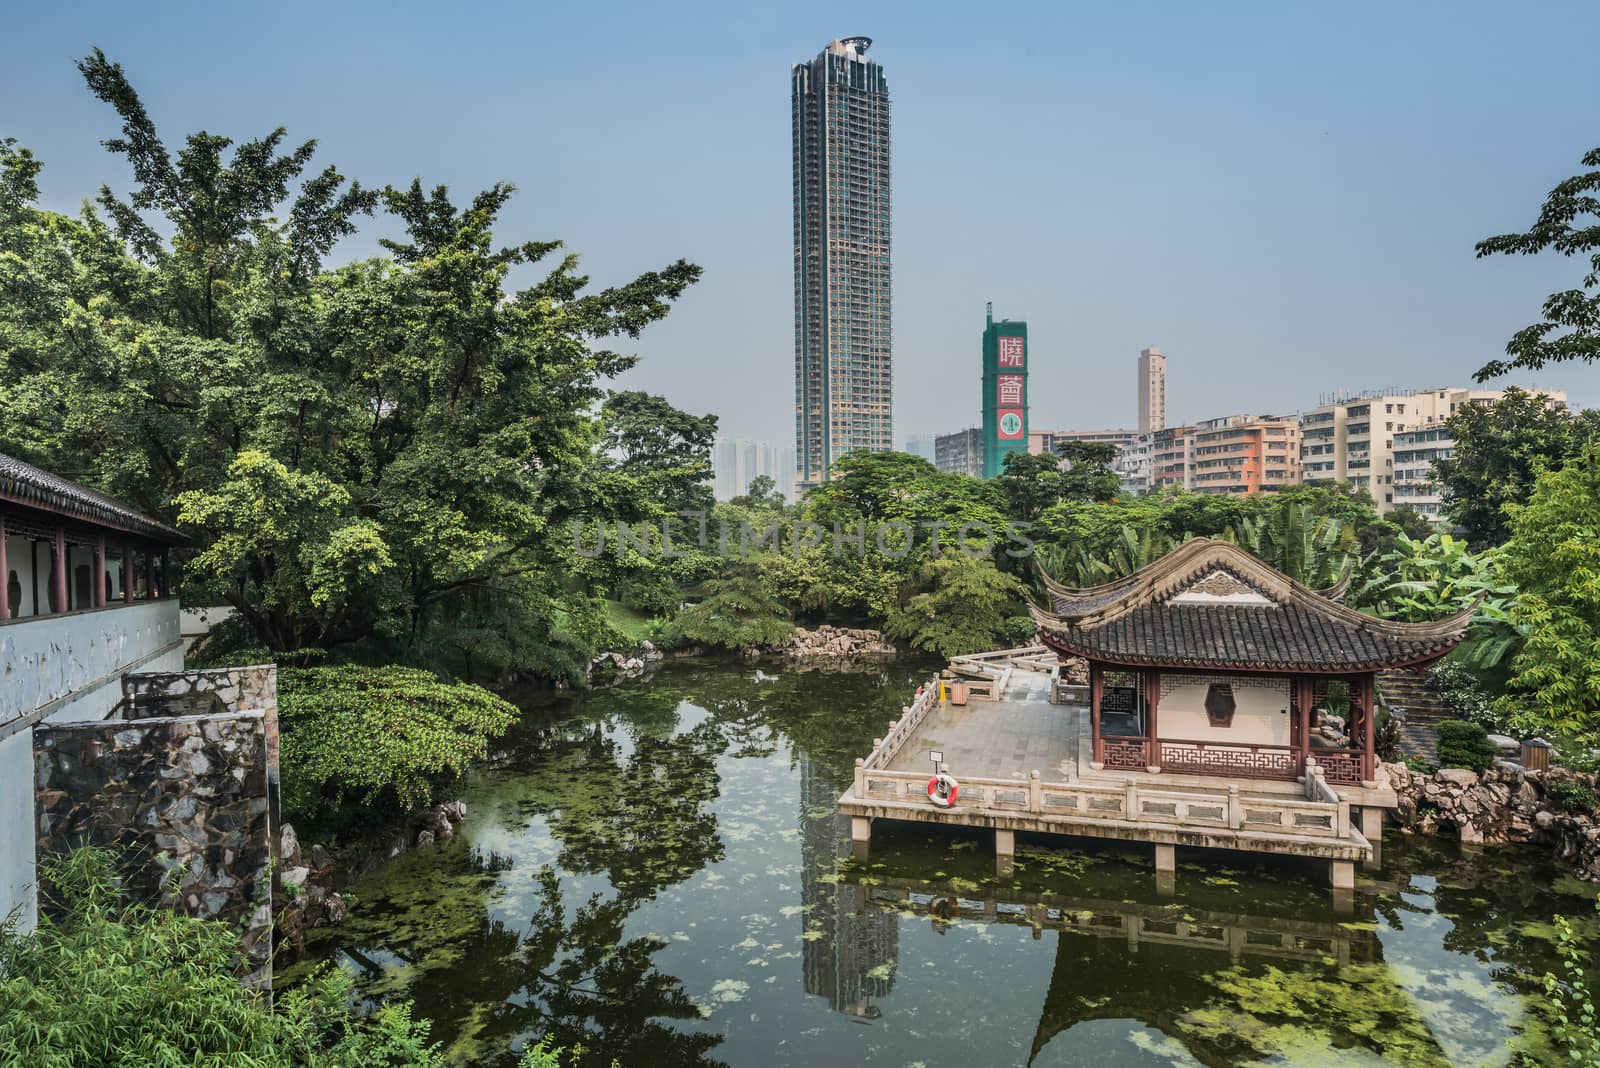 pagoda temple pond Kowloon Walled City Park Hong Kong  by PIXSTILL